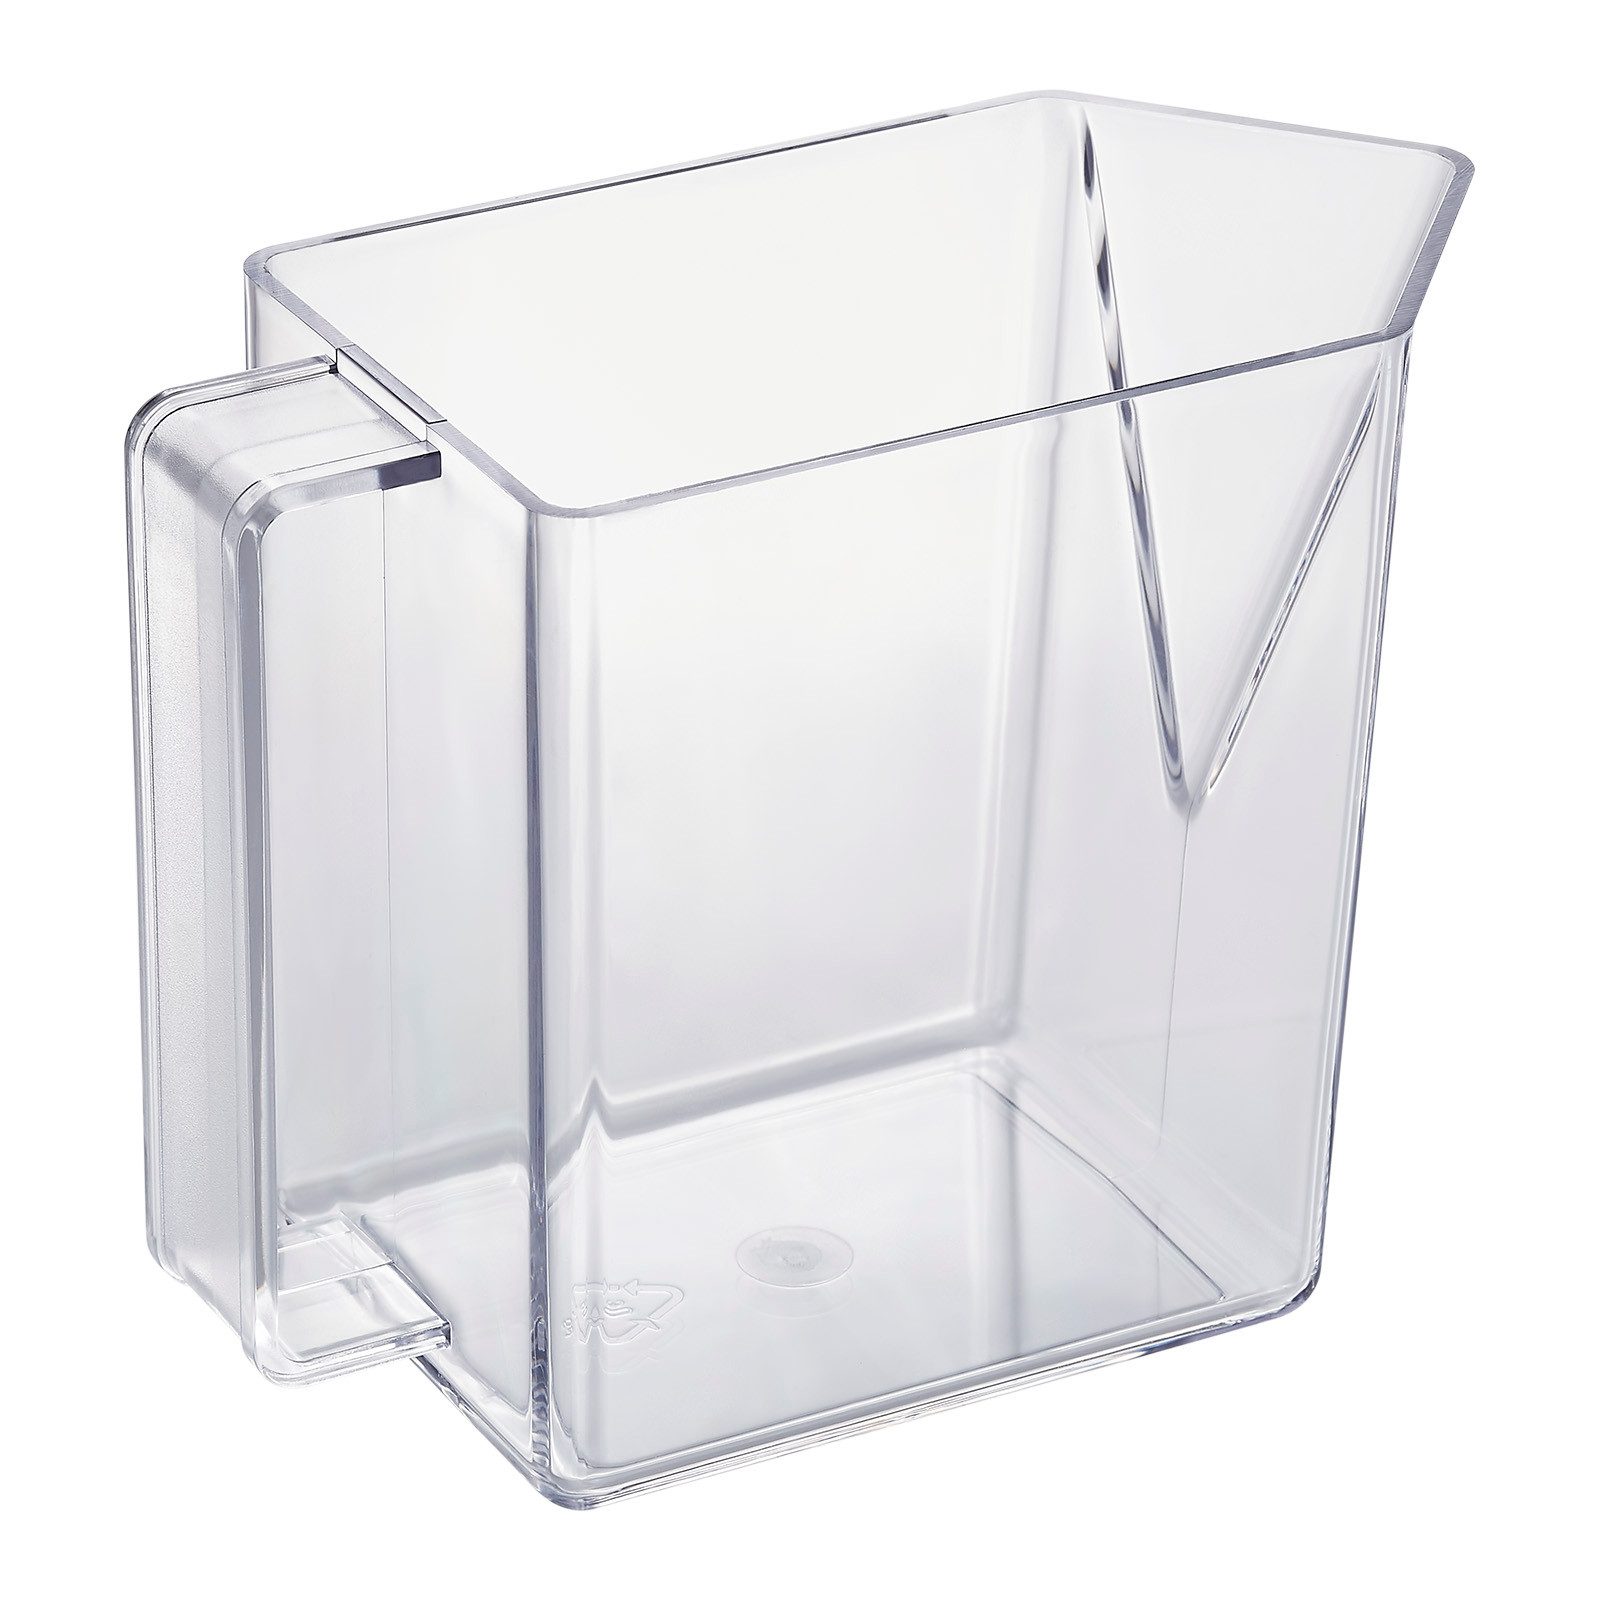 SO-TECH® Schrankeinsatz Küchenschütte, Schütte 0,9 Liter glasklar / transparent